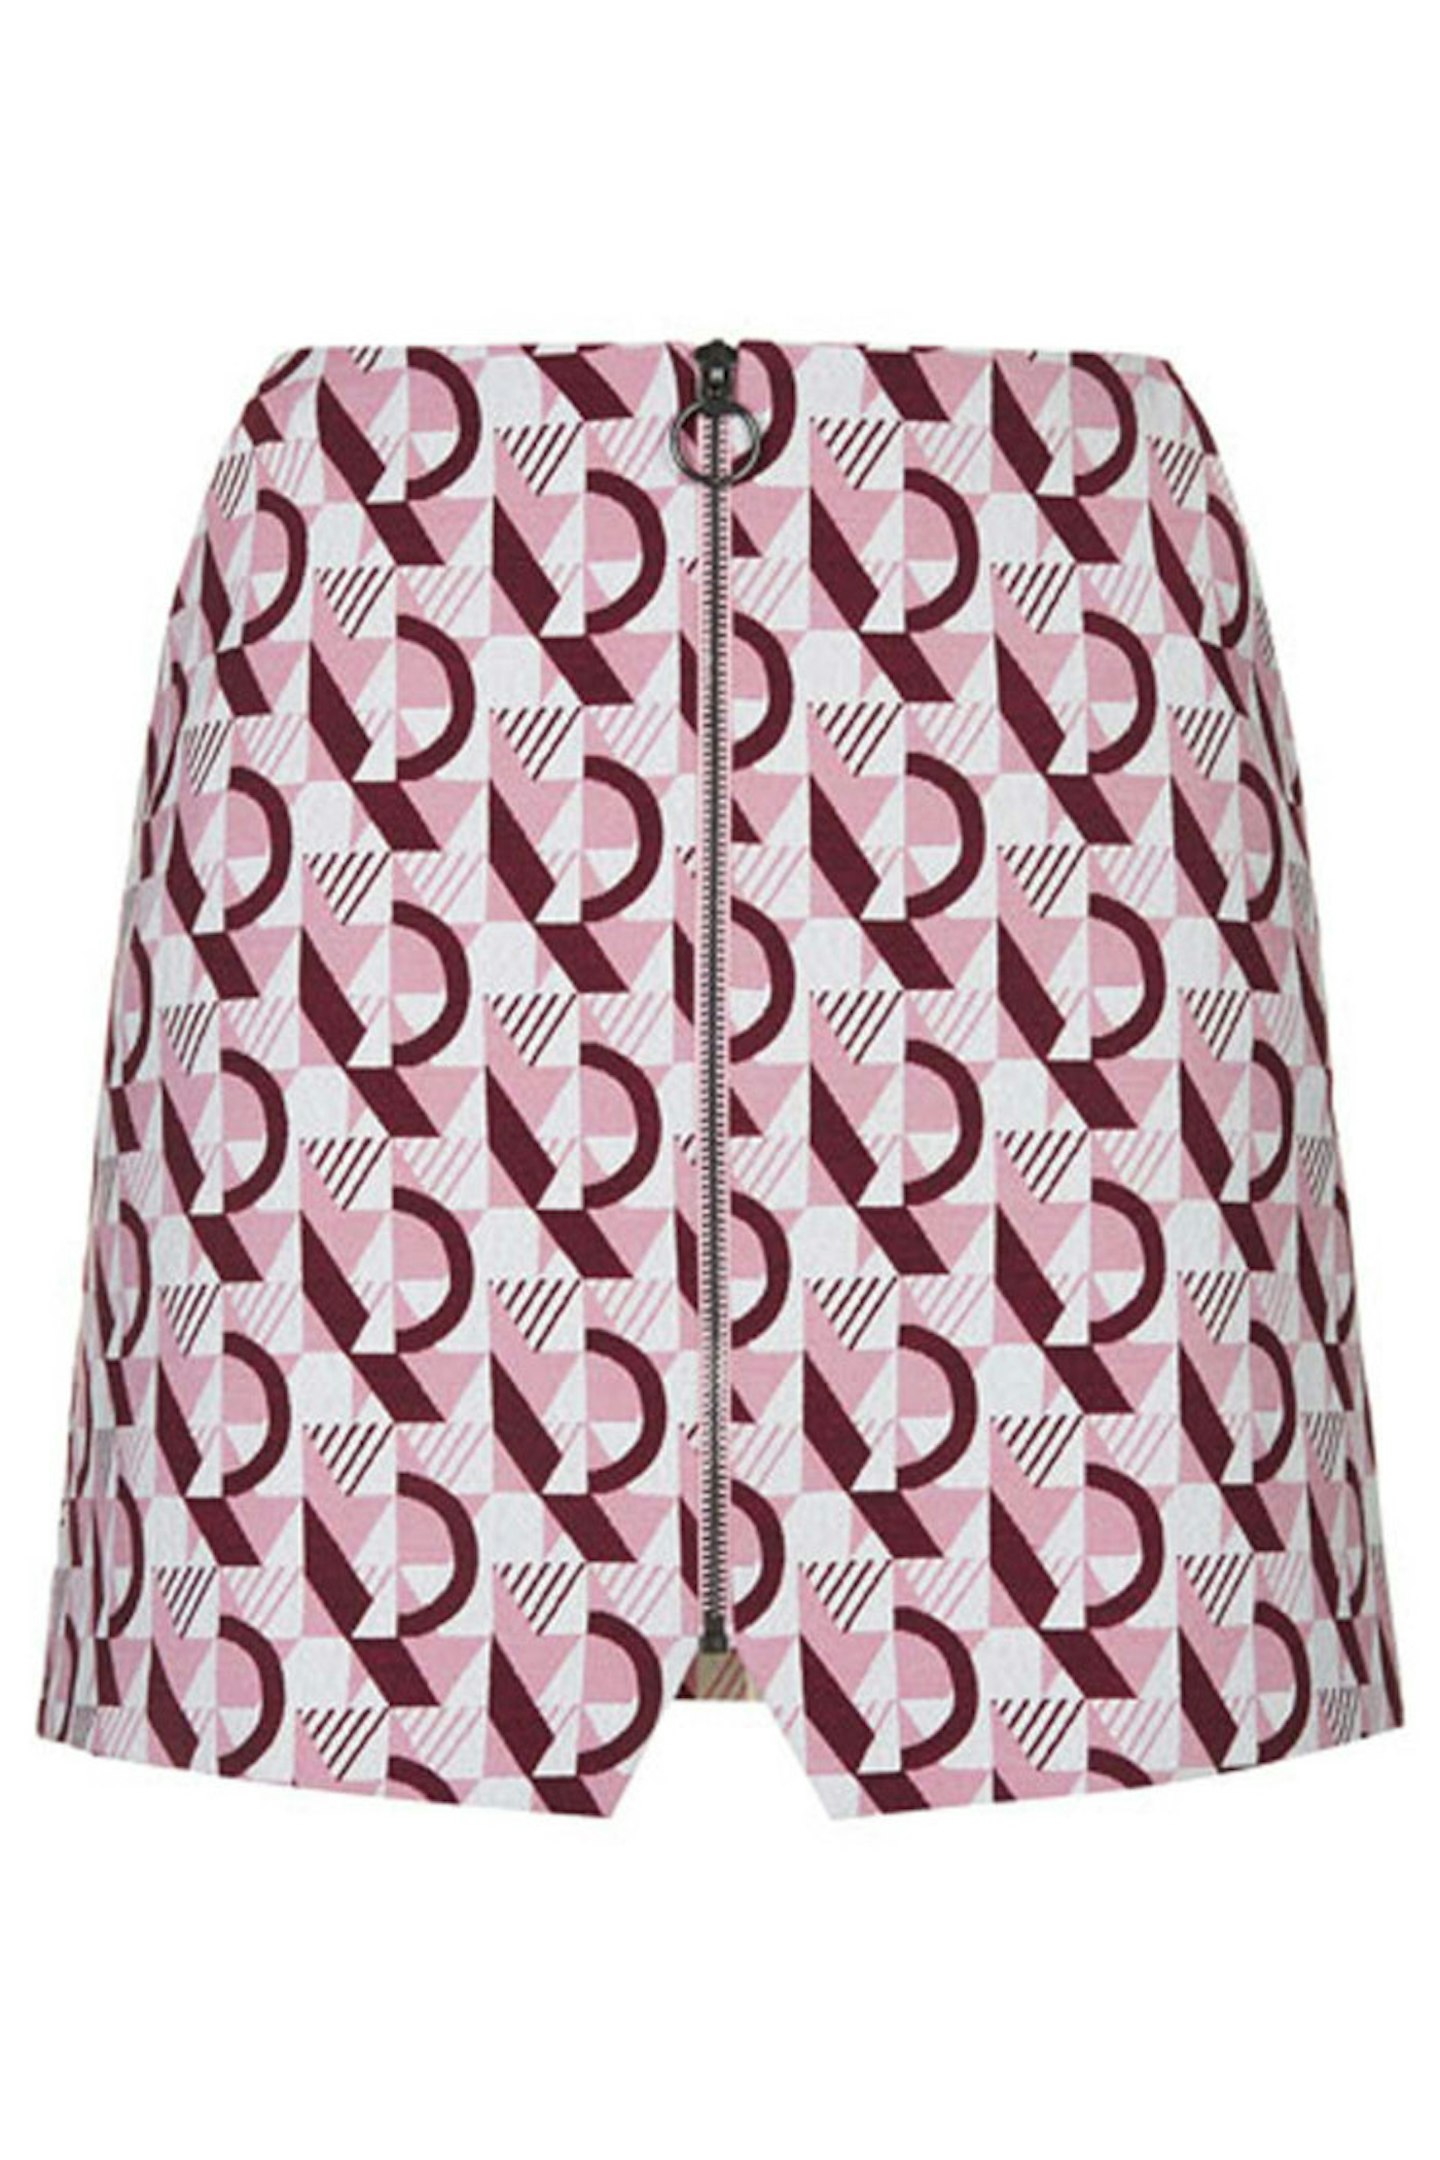 Skirt, £36, Topshop